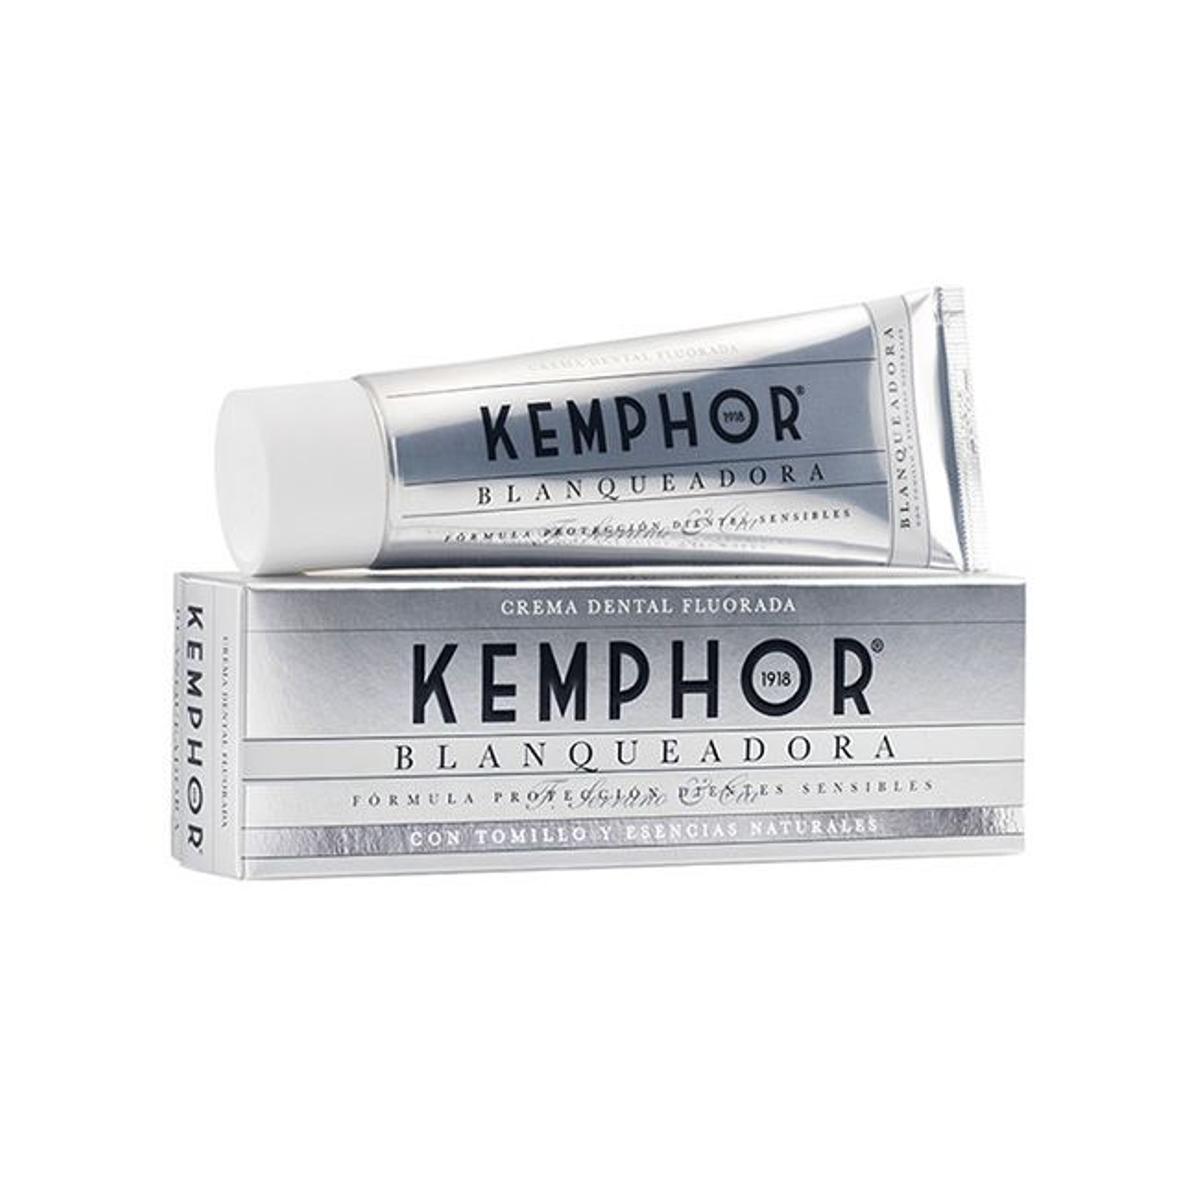 Crema dental blanqueadora, de Kemphor